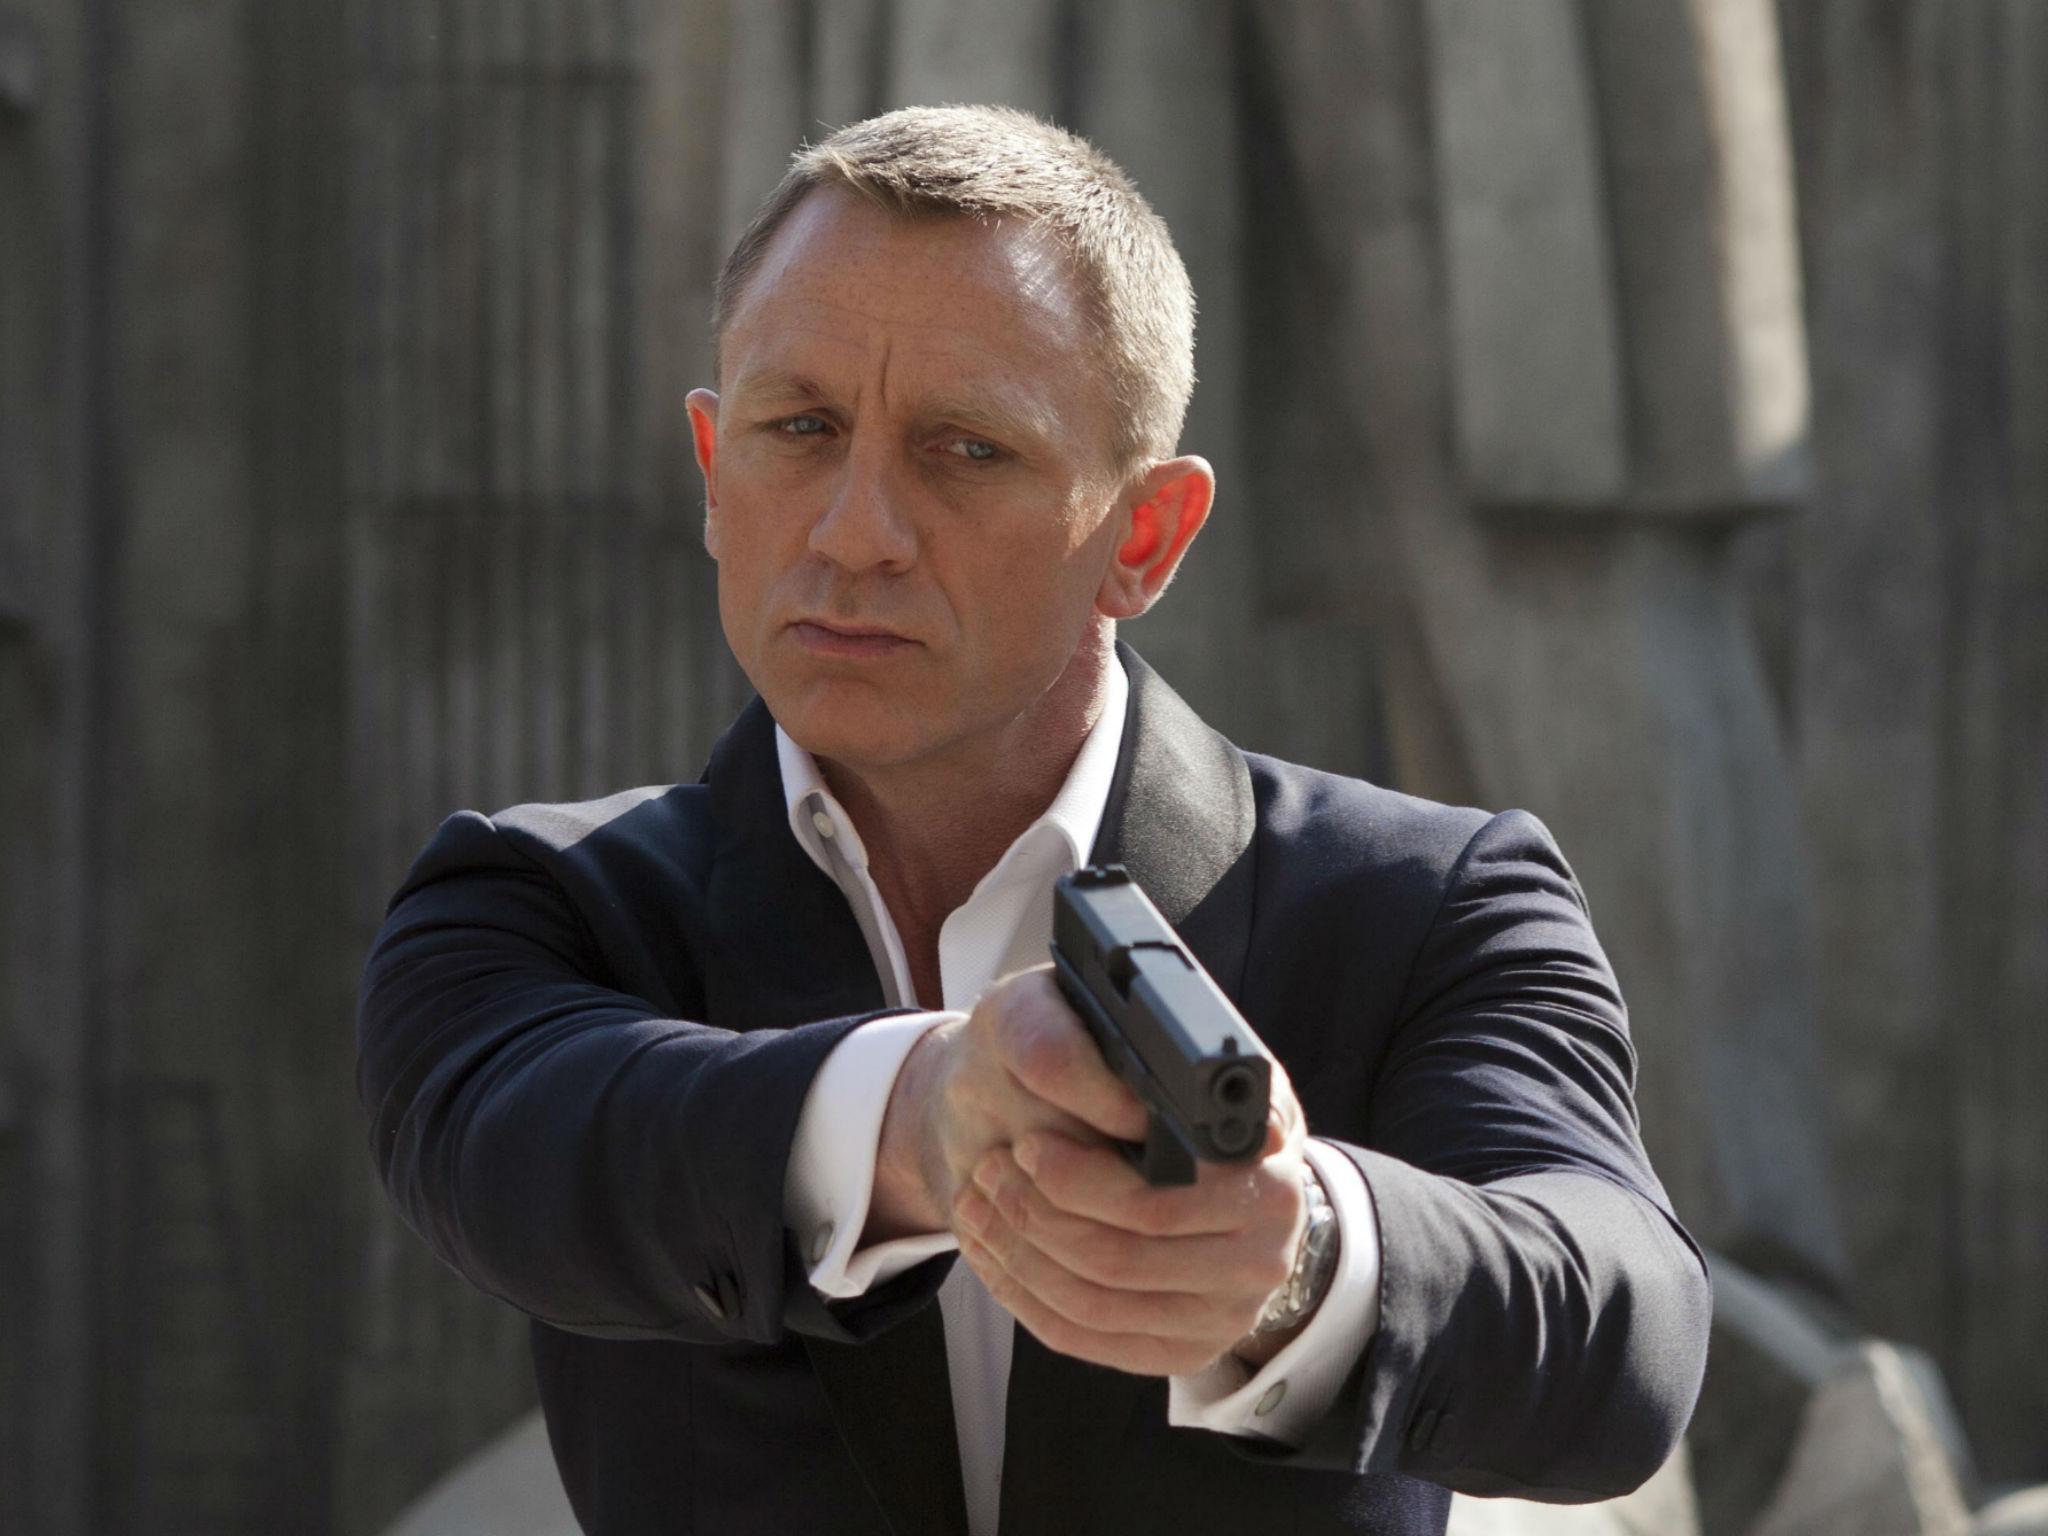 Daniel Craig confirms he's 'done' with James Bond franchise